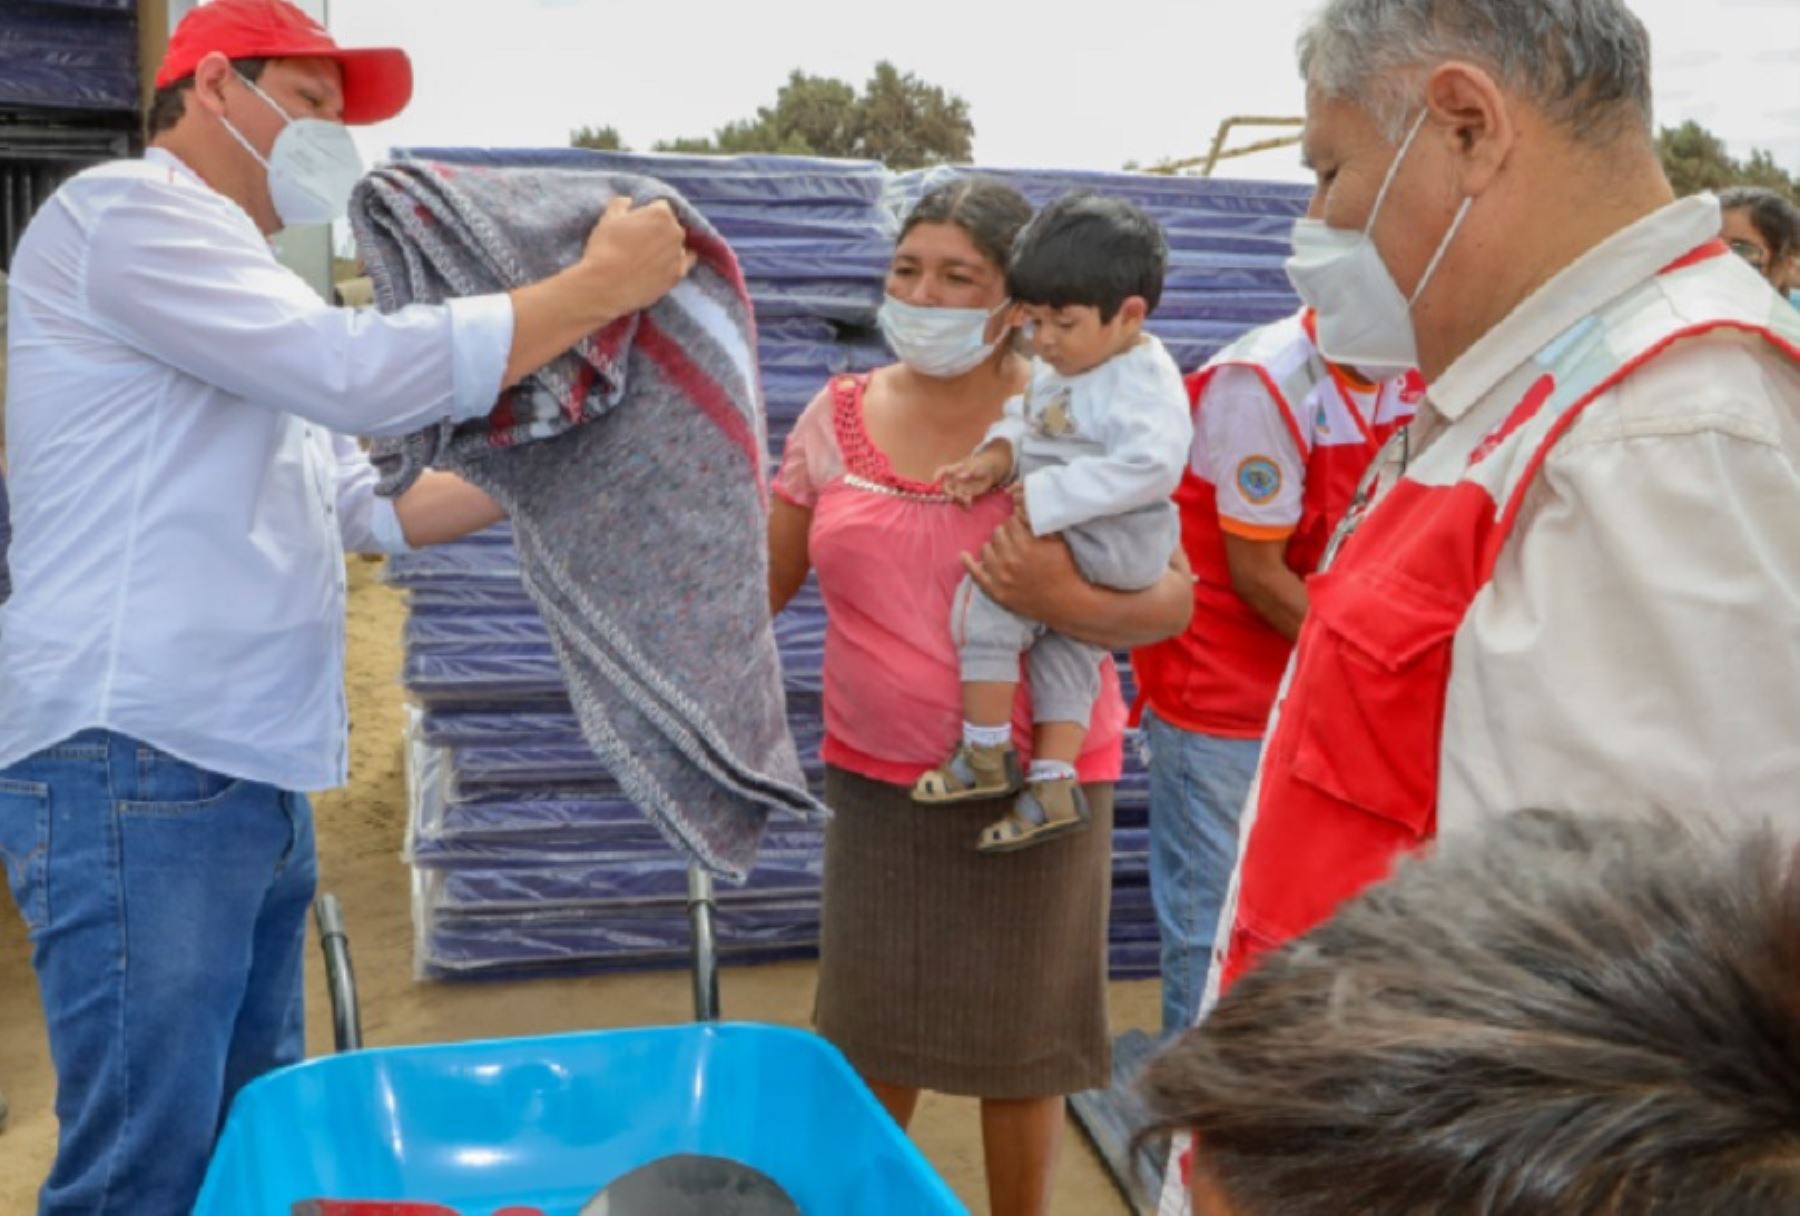 El gobernador regional de Piura, Servando García, entregó ayuda humanitaria a los damnificados por el fuerte sismo y sus réplicas, y constató los daños en algunas infraestructuras. Foto: Facebook Gobierno Regional de Piura